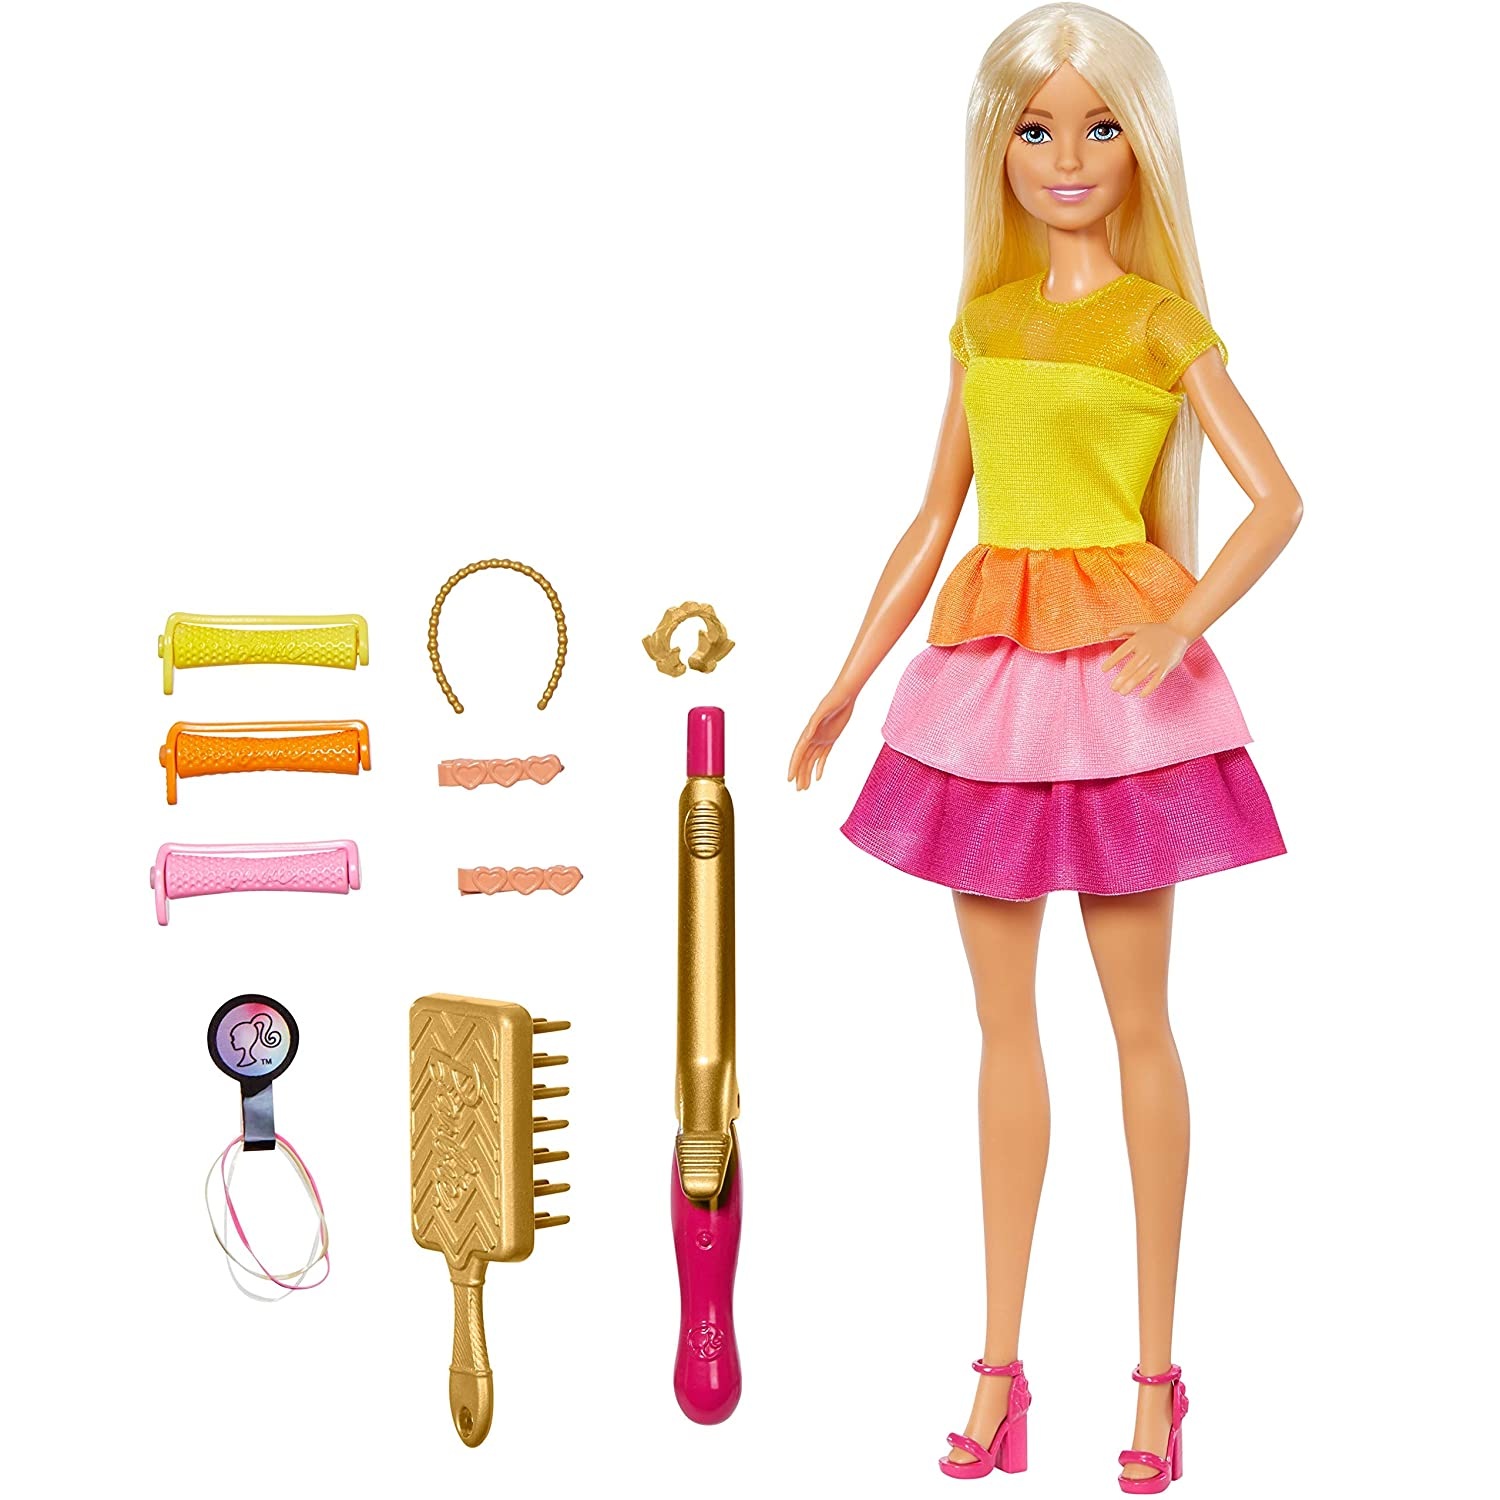 Игрушка барби купить. Кукла Барби Маттел. Mattel кукла Барби «принцесса». Кукла Барби с плойкой для волос. Кукла Барби парикмахер кукла Барби в магазине.